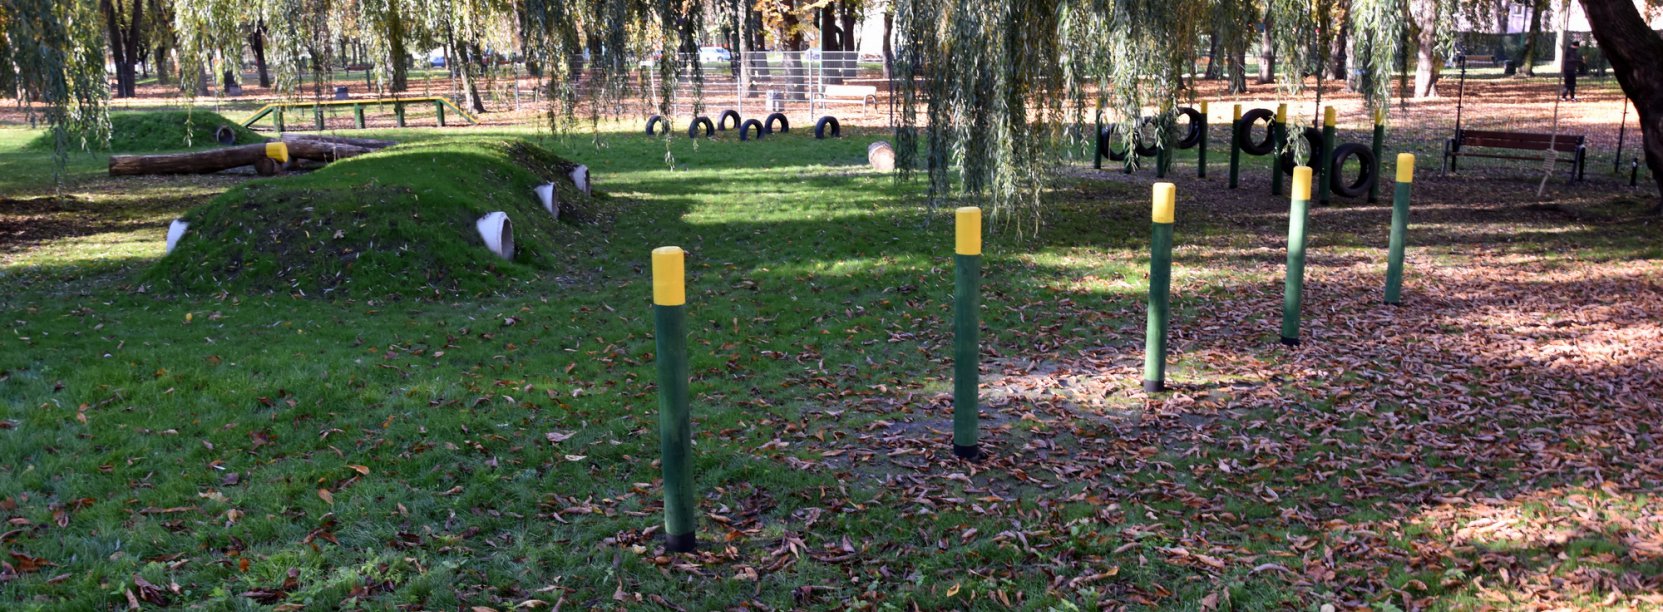 Ogrodzona część parku z urządzeniami do zabawy z psami 